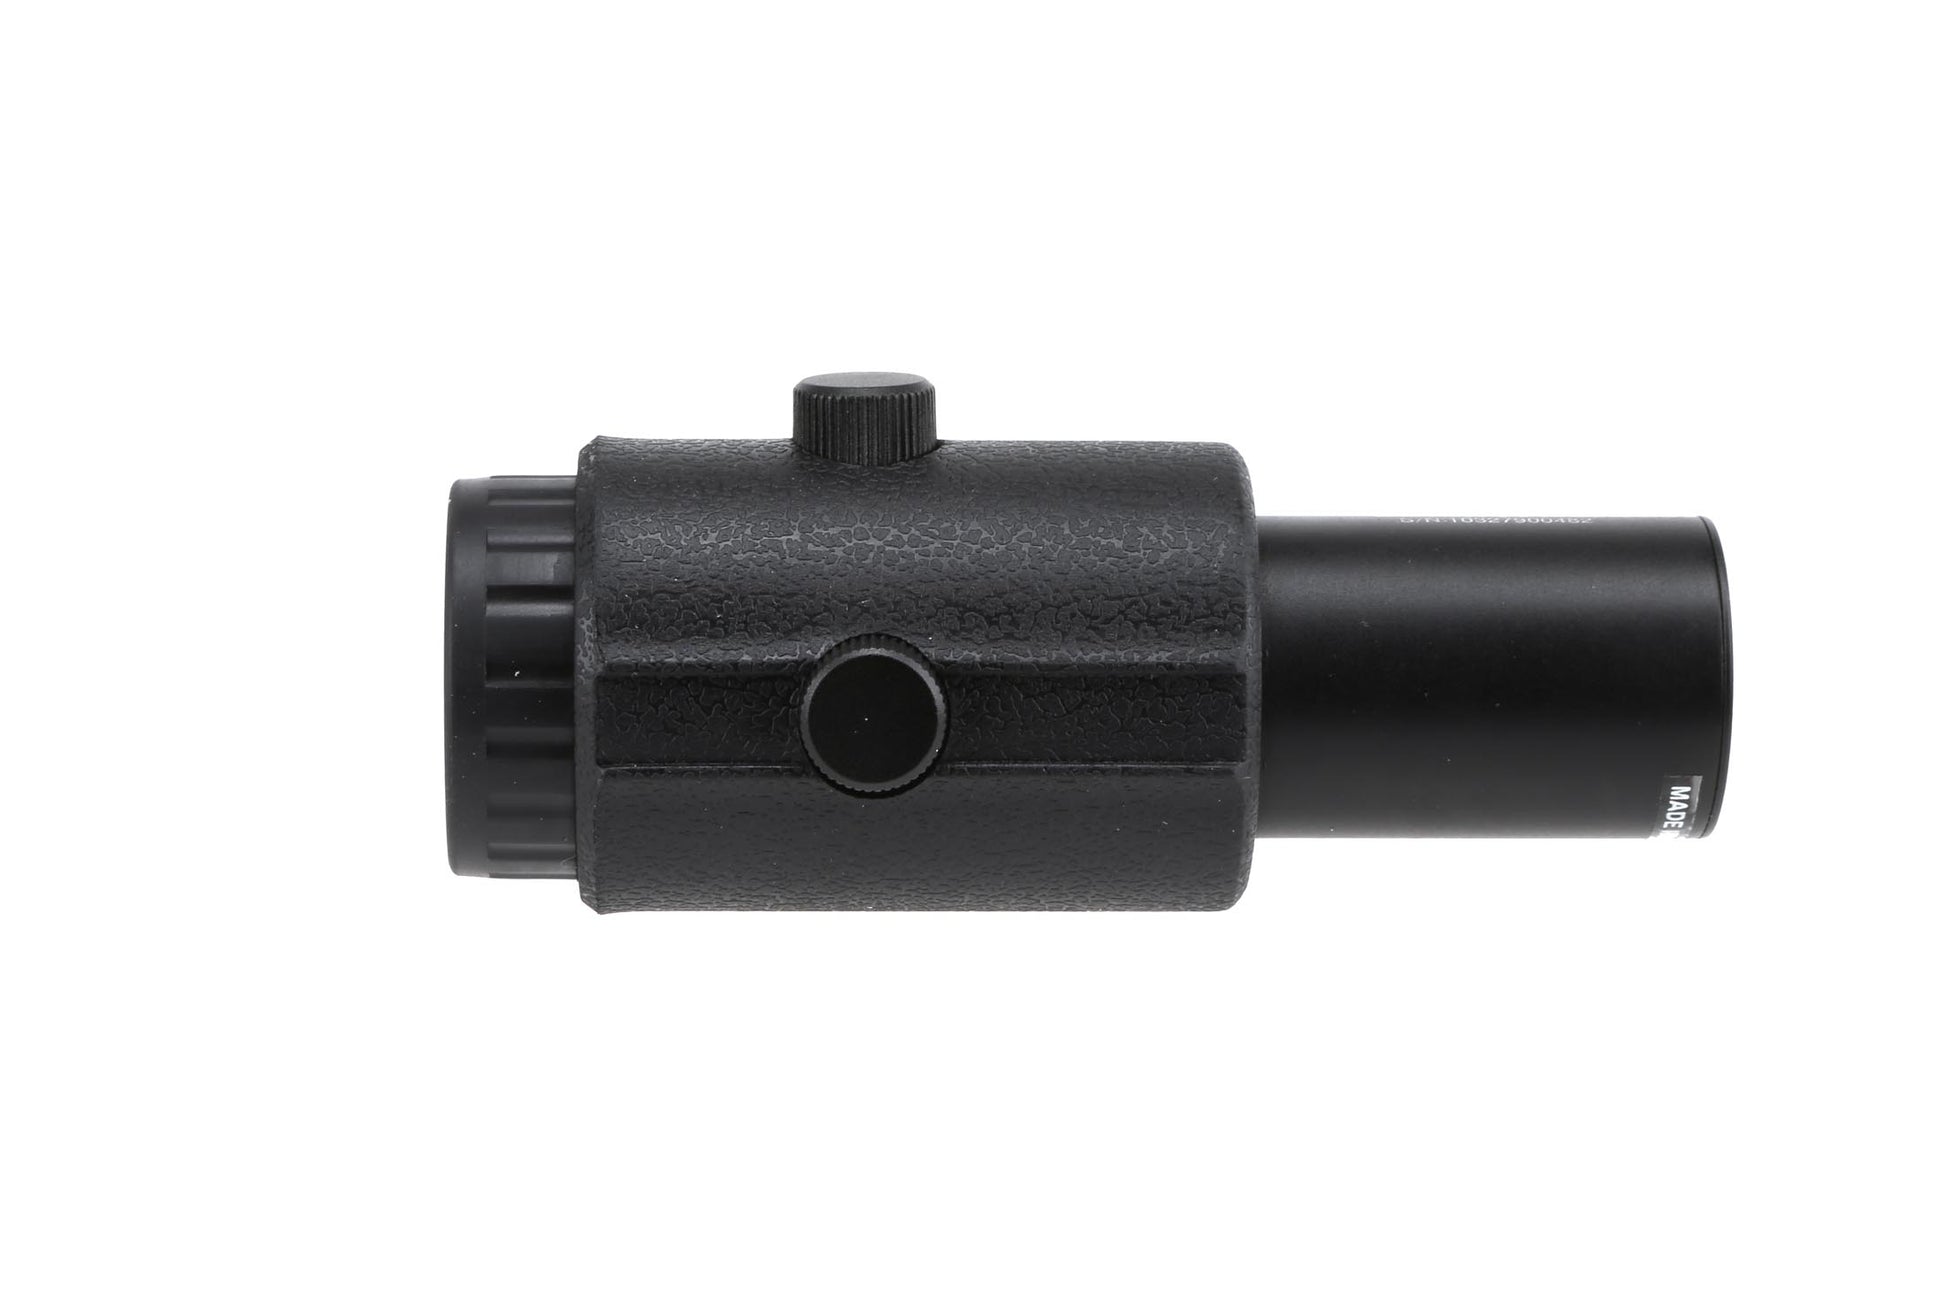 Magnifier zoom x3 Génération 4 - Primary Arms-T.A DEFENSE